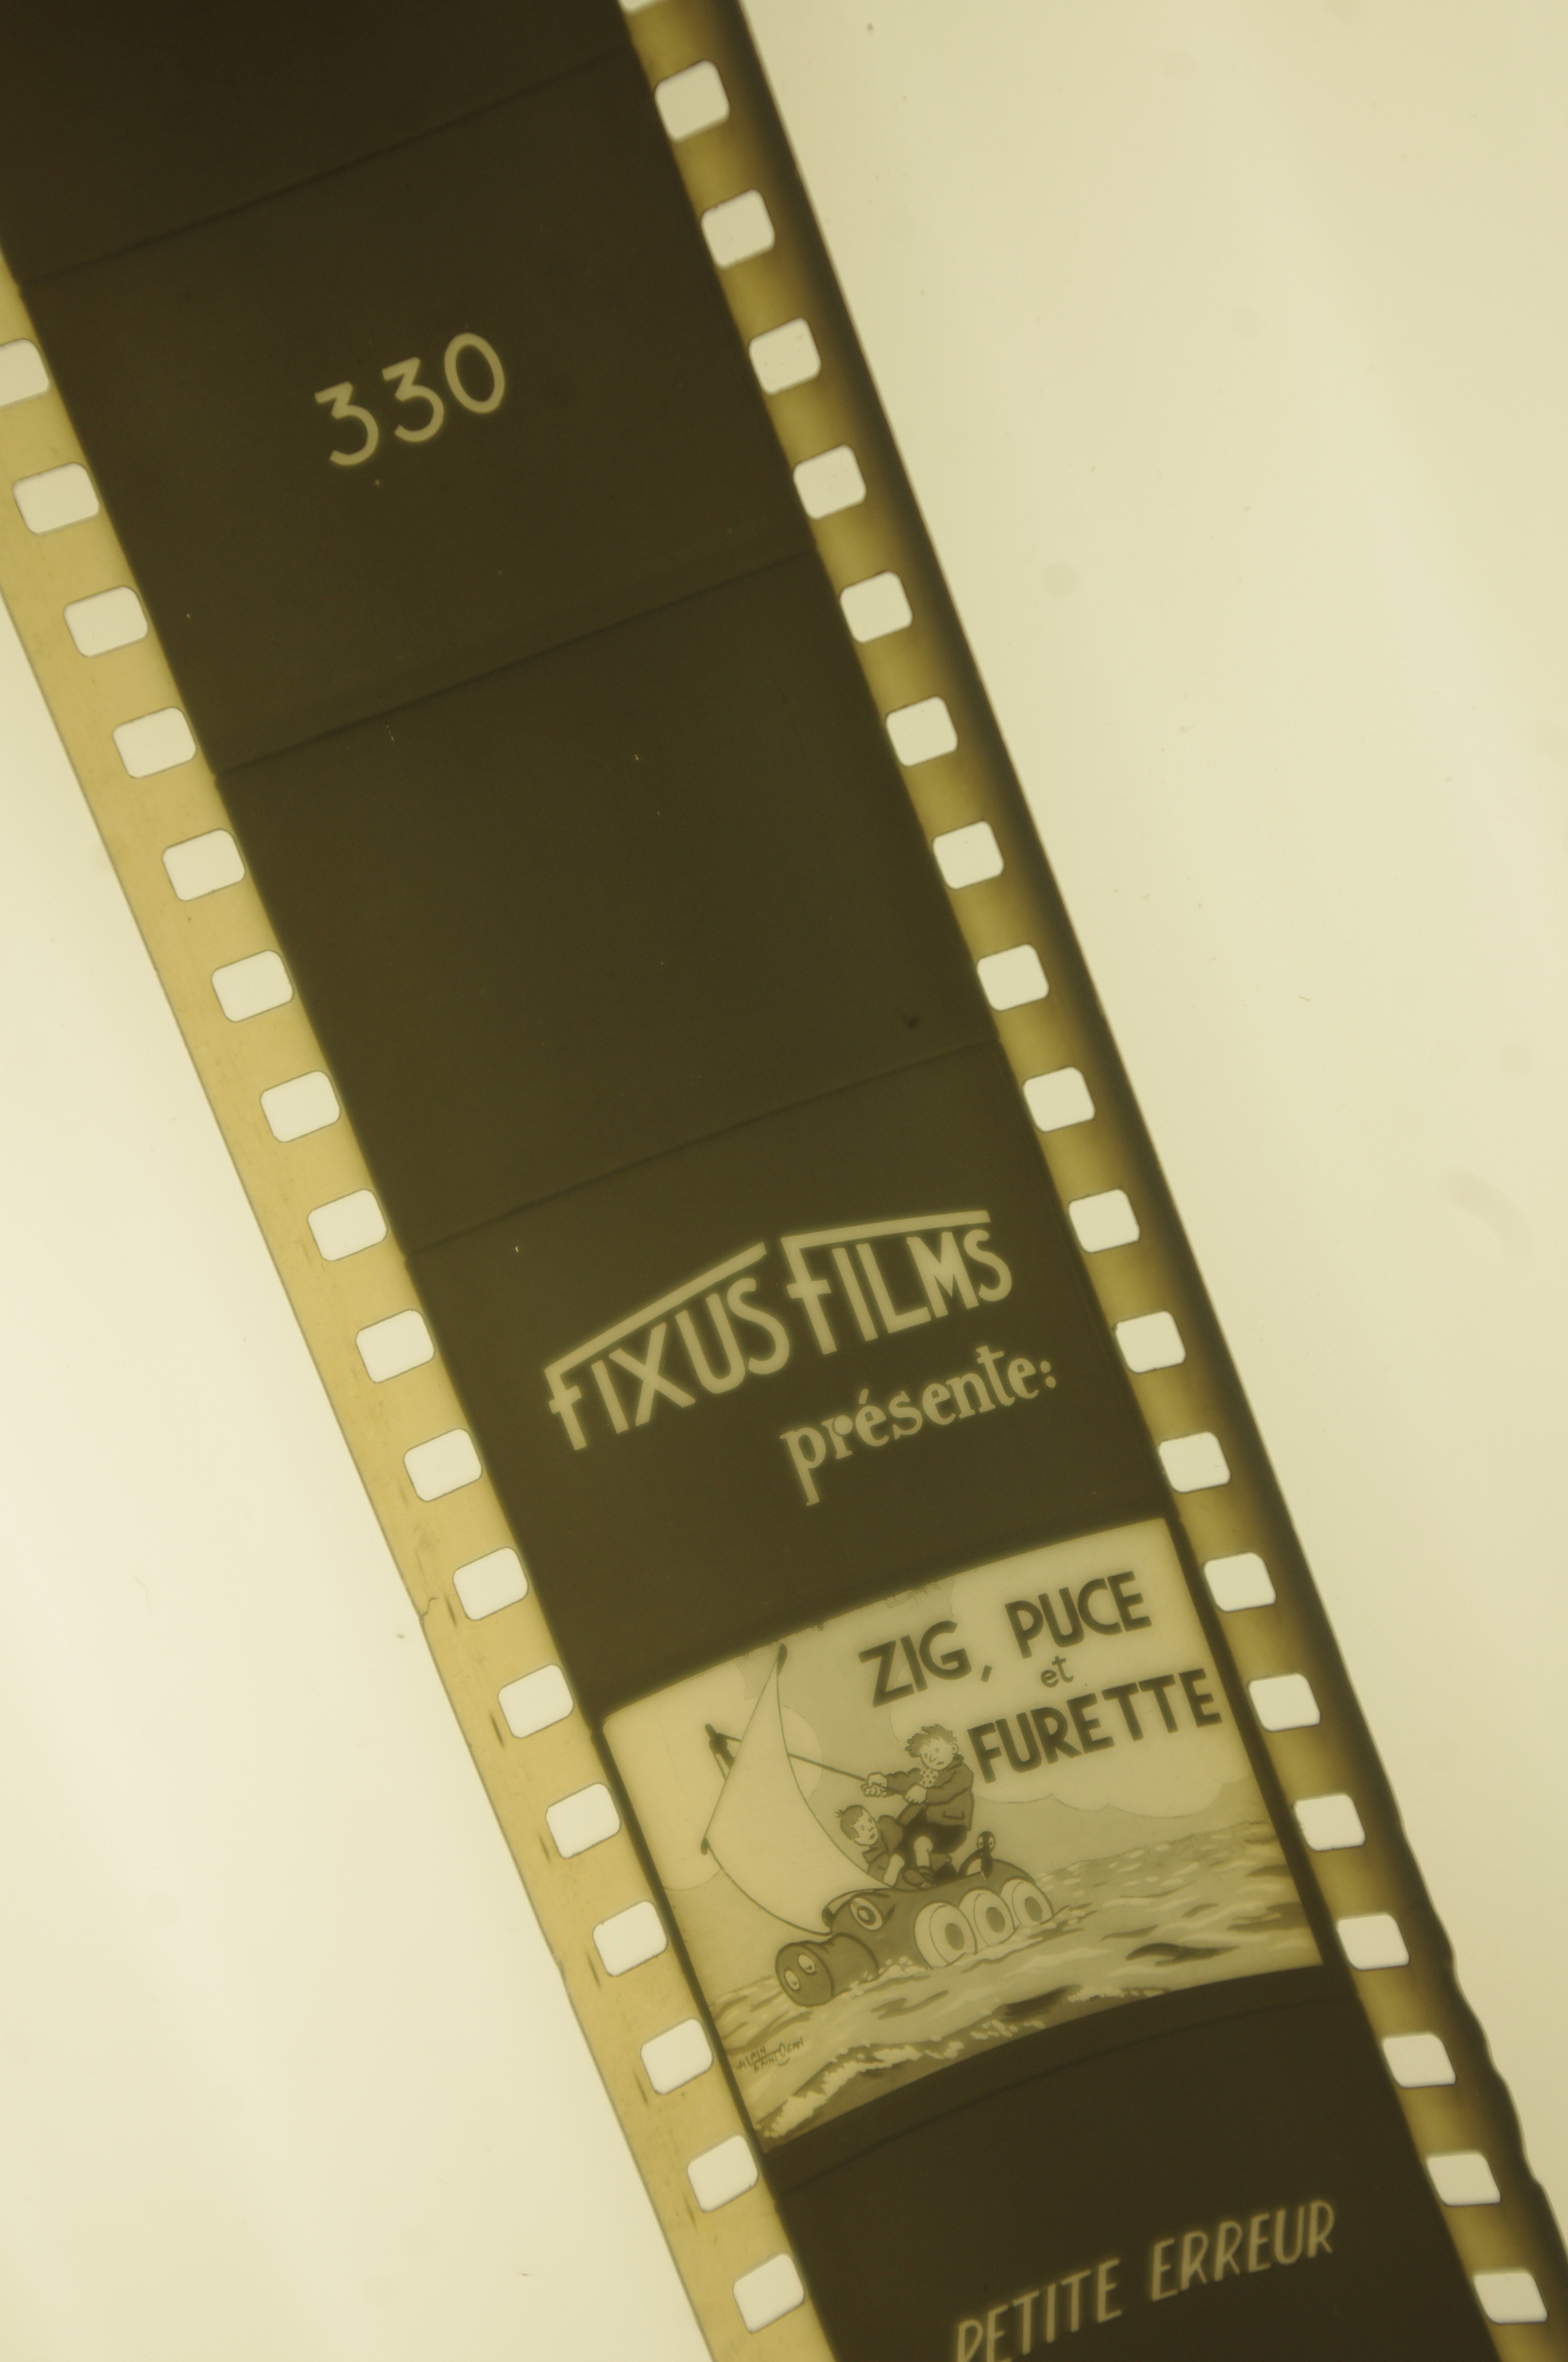 ZIG-ET-PUCE-ET-FURETTE-N°330-FILM-FIXE-BD-FIXUS-FILM-LEMASTERBROCKERS